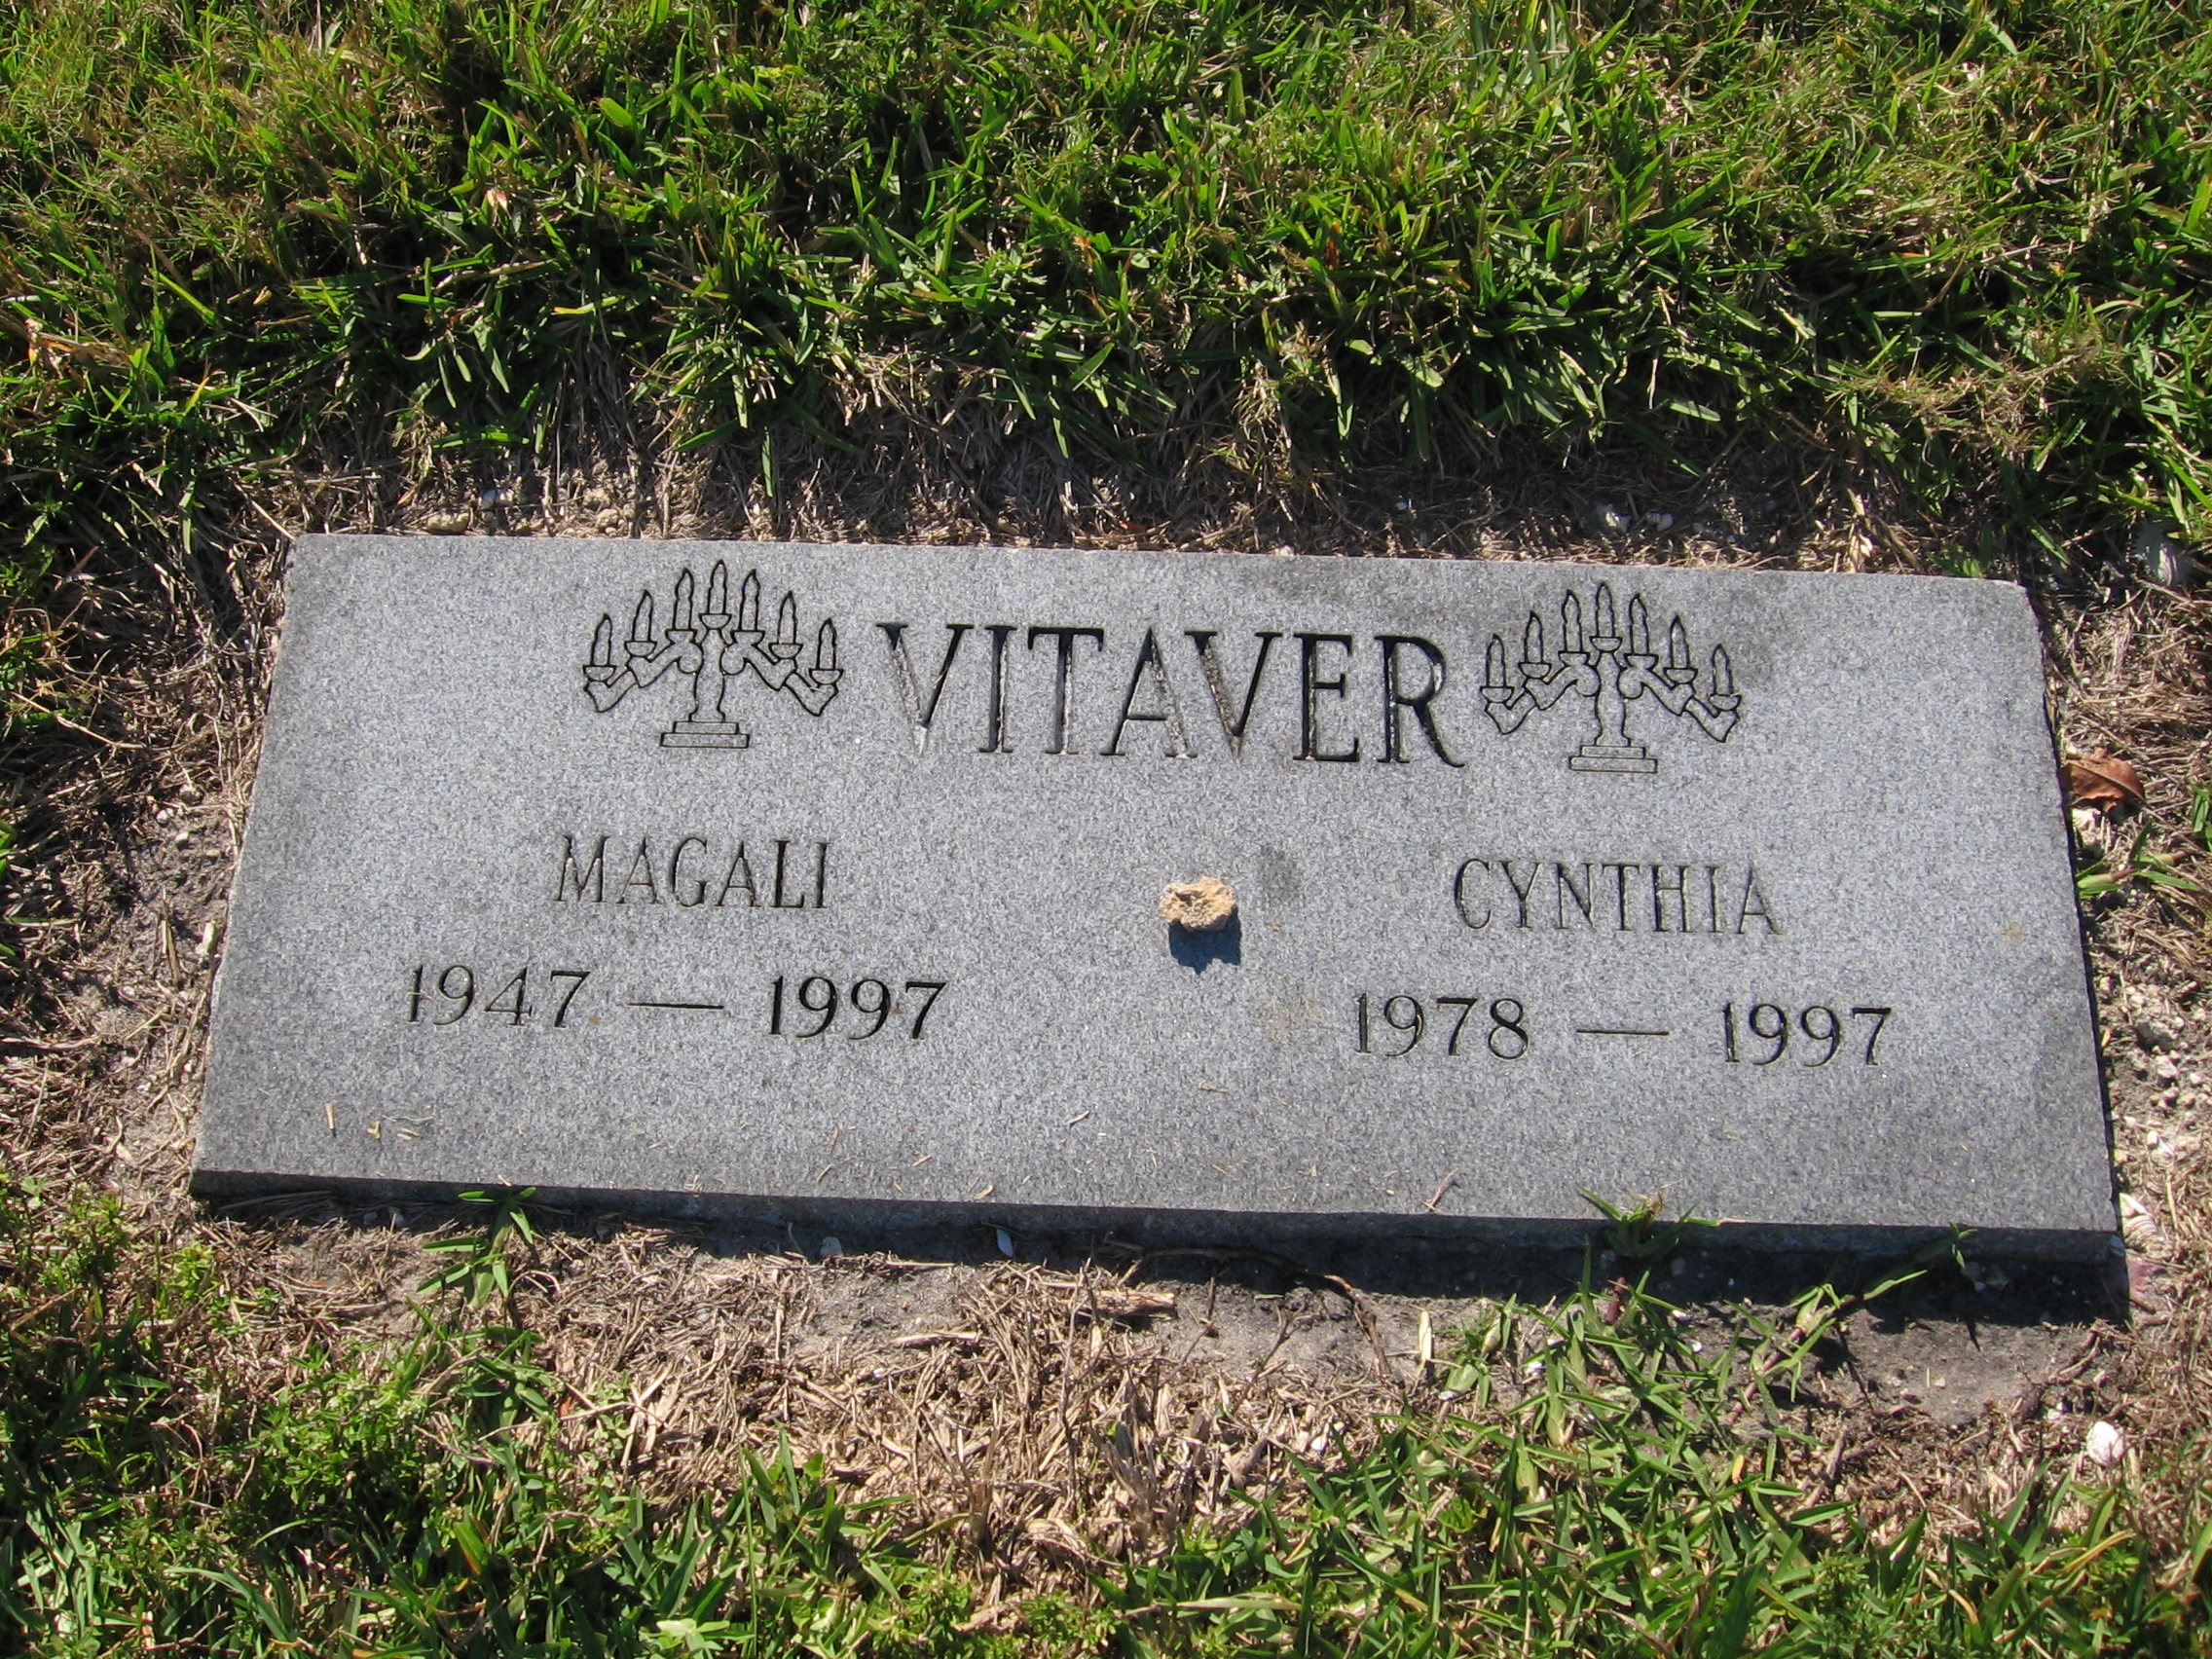 Cynthia Vitaver